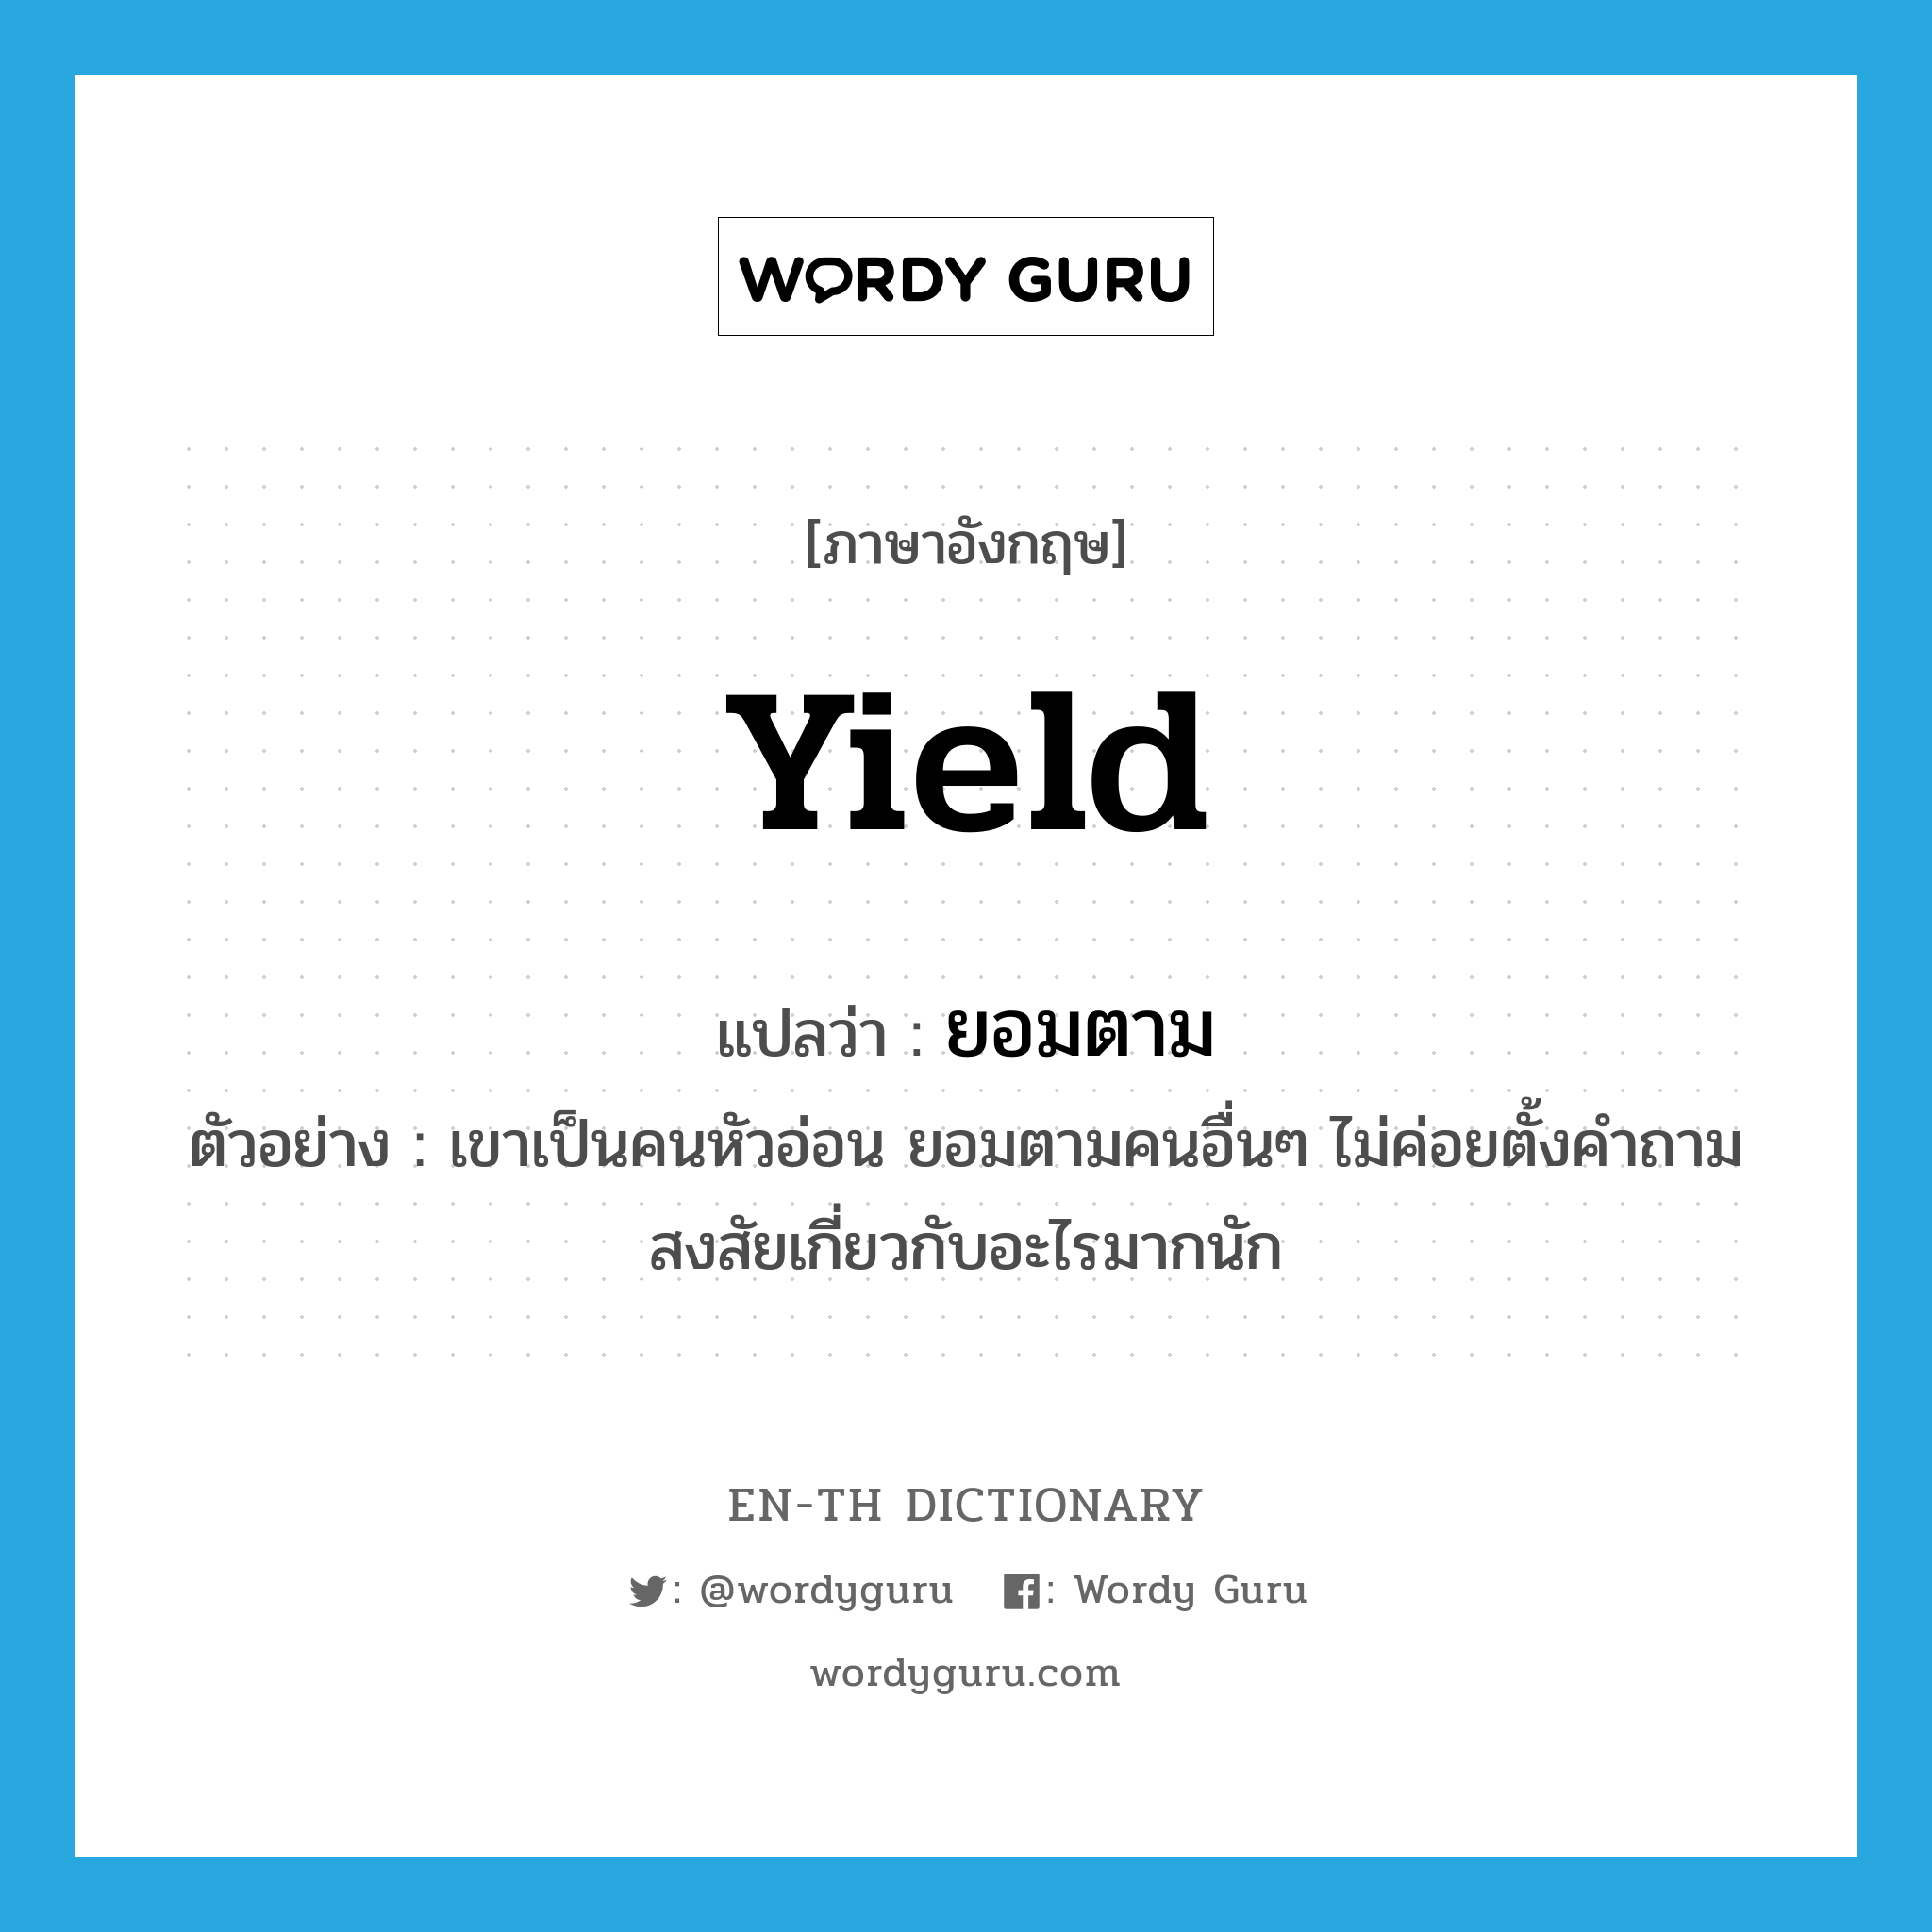 yield แปลว่า?, คำศัพท์ภาษาอังกฤษ yield แปลว่า ยอมตาม ประเภท V ตัวอย่าง เขาเป็นคนหัวอ่อน ยอมตามคนอื่นๆ ไม่ค่อยตั้งคำถามสงสัยเกี่ยวกับอะไรมากนัก หมวด V